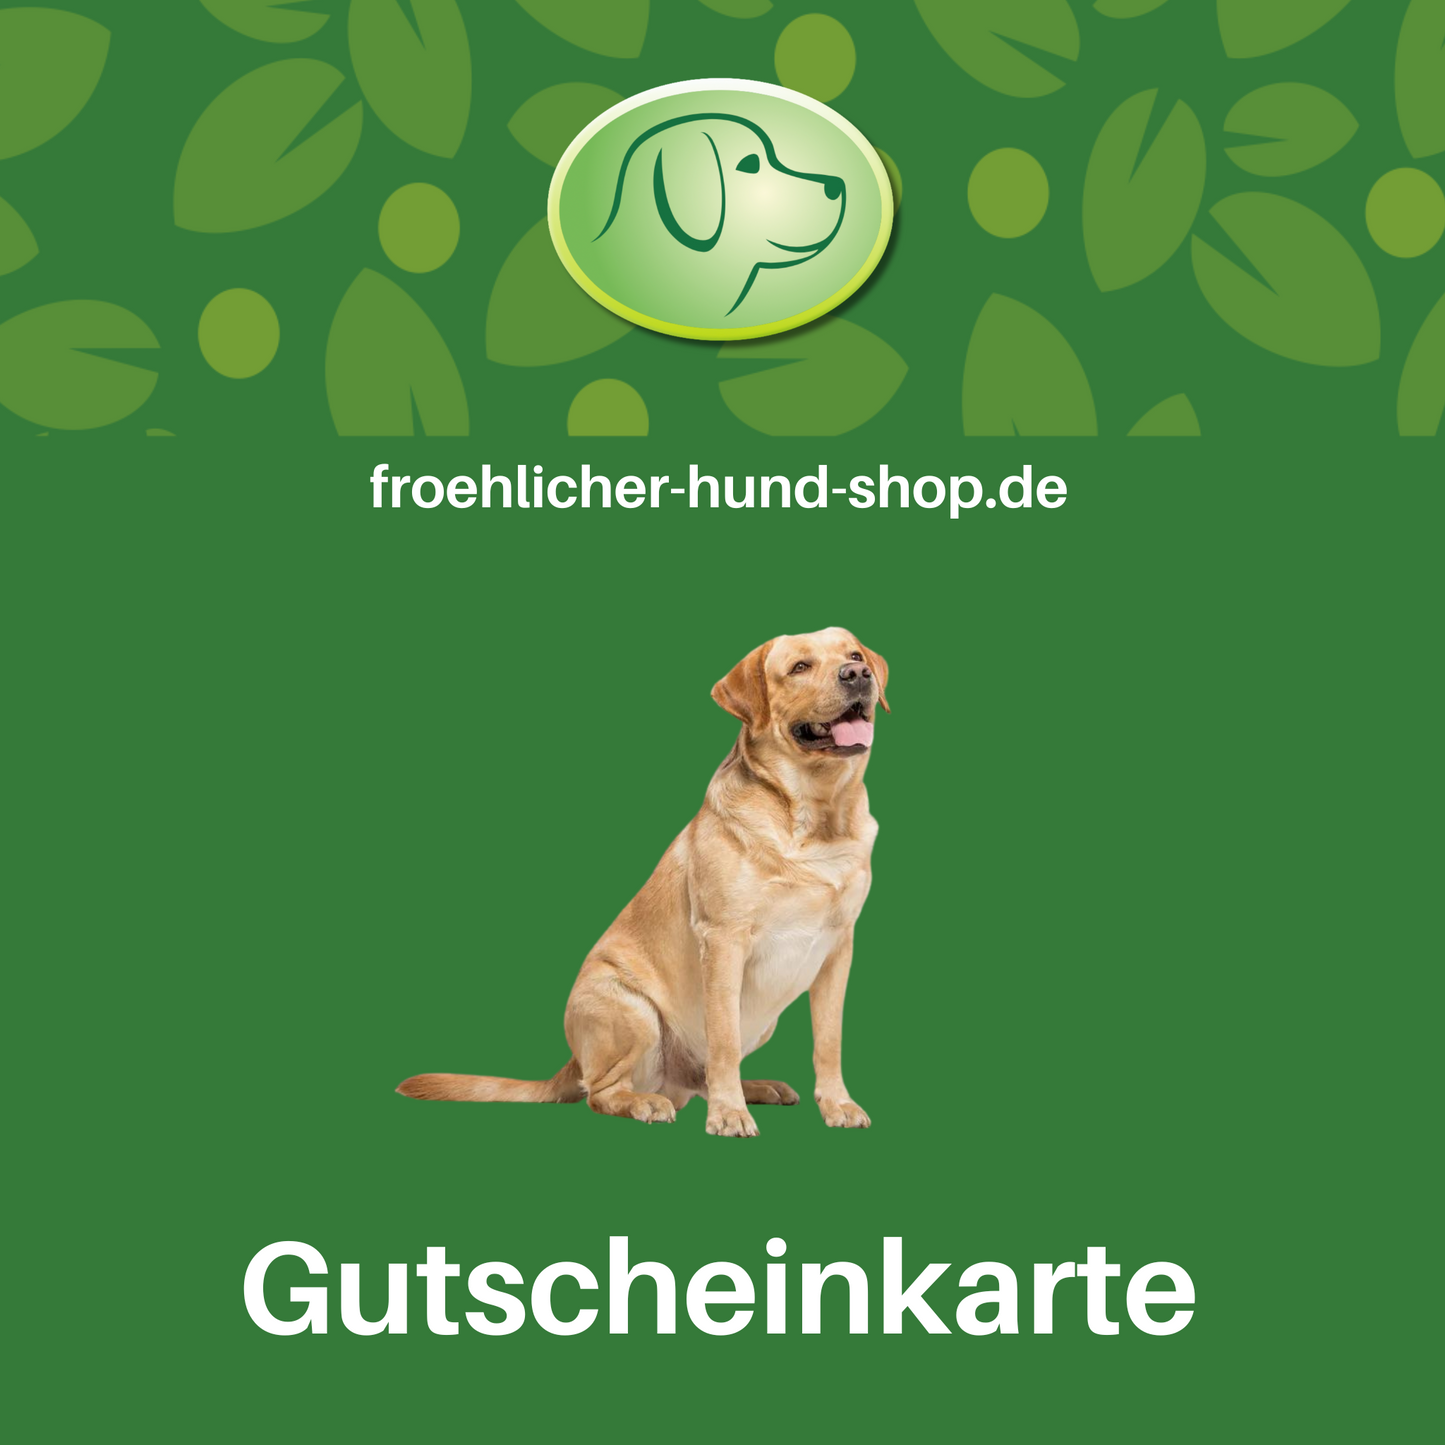 froehlicher-hund-shop | Gutscheinkarte